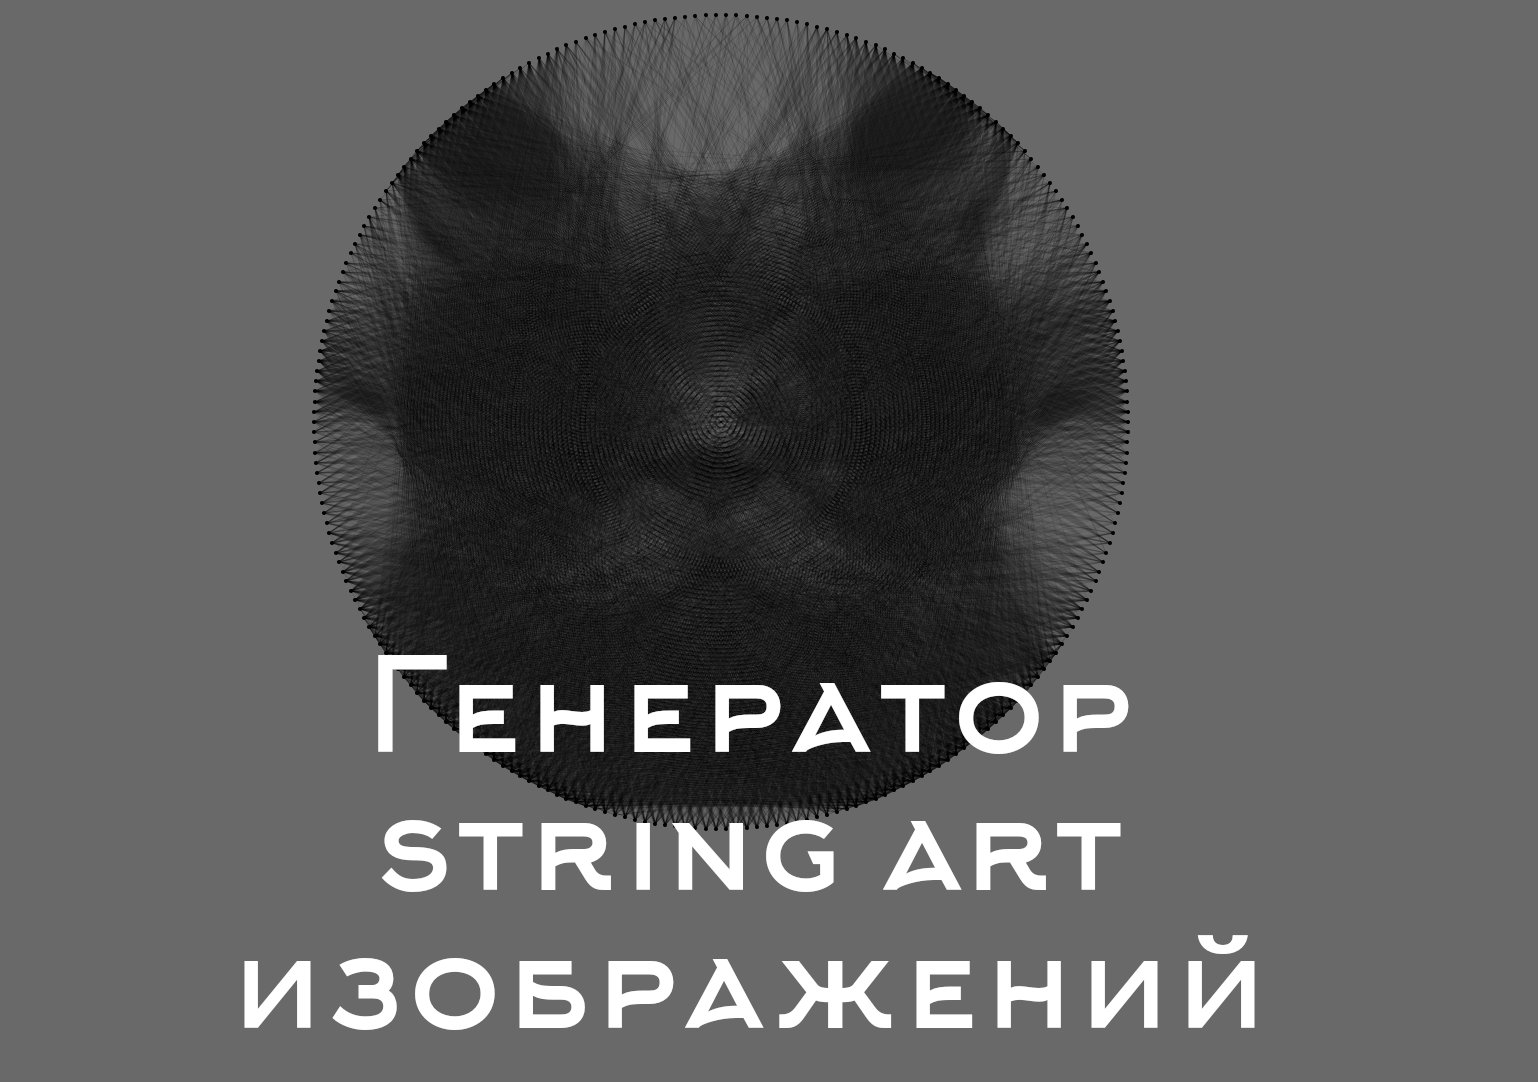 Генератор string art изображений